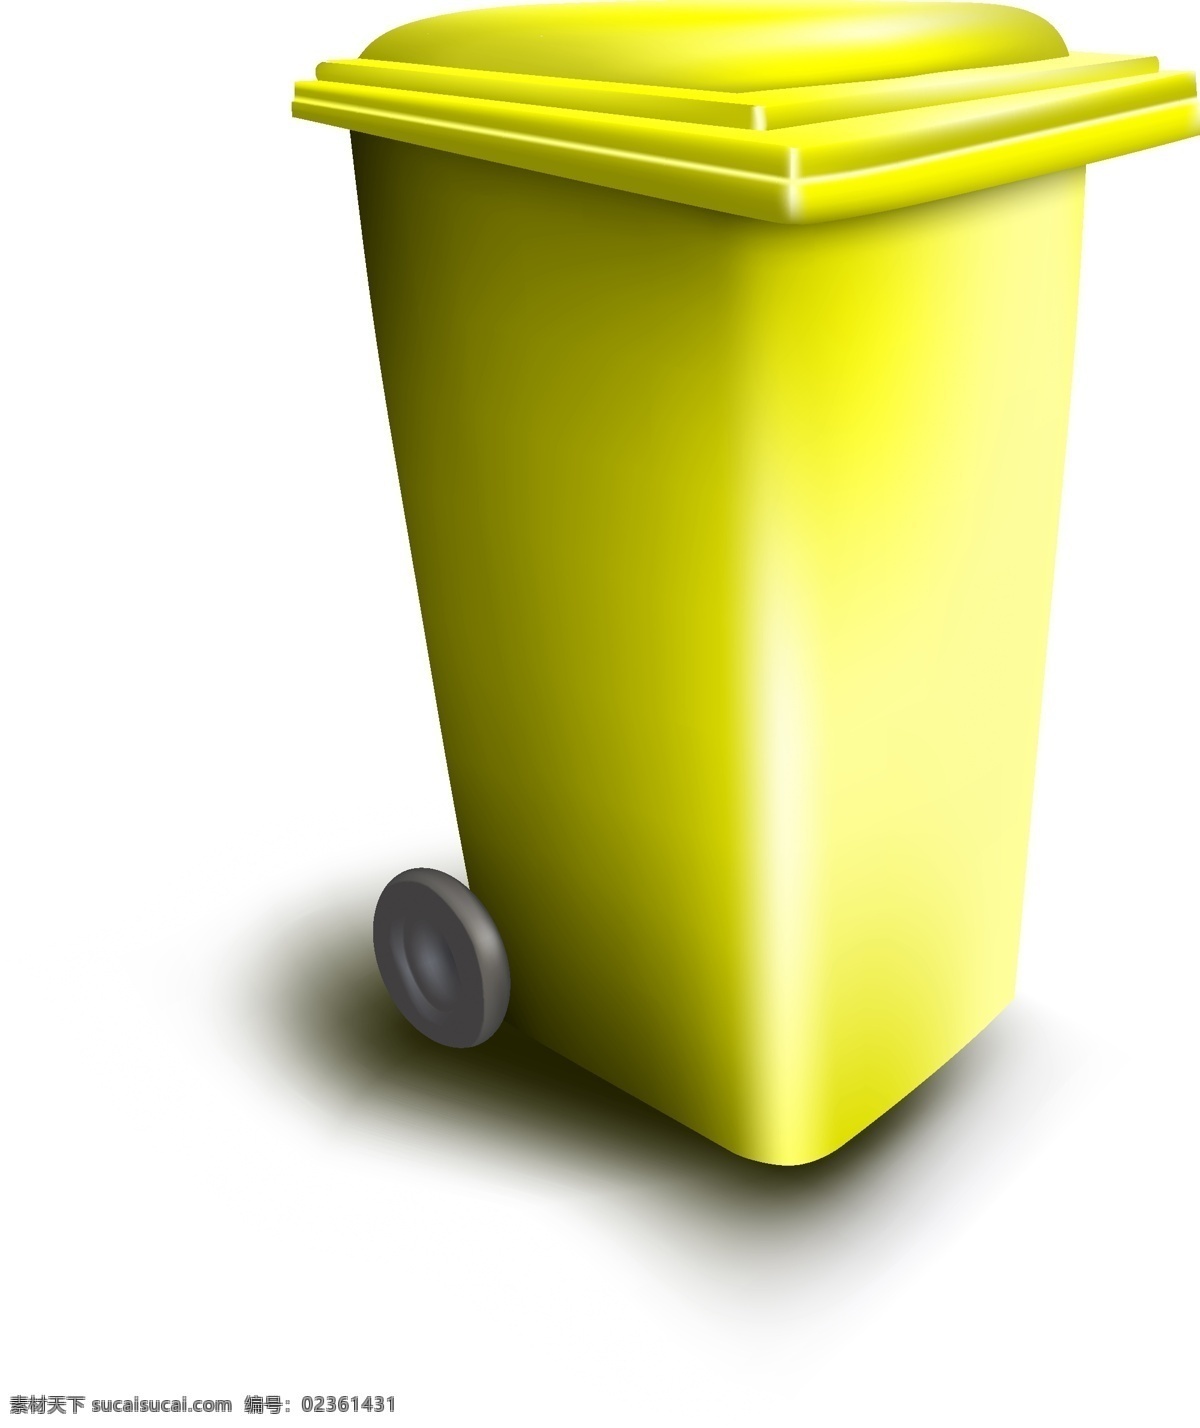 黄色 立体 垃圾桶 黄色垃圾桶 垃圾桶图标 卡通垃圾桶 矢量垃圾桶 环保主题 生活百科 矢量素材 白色